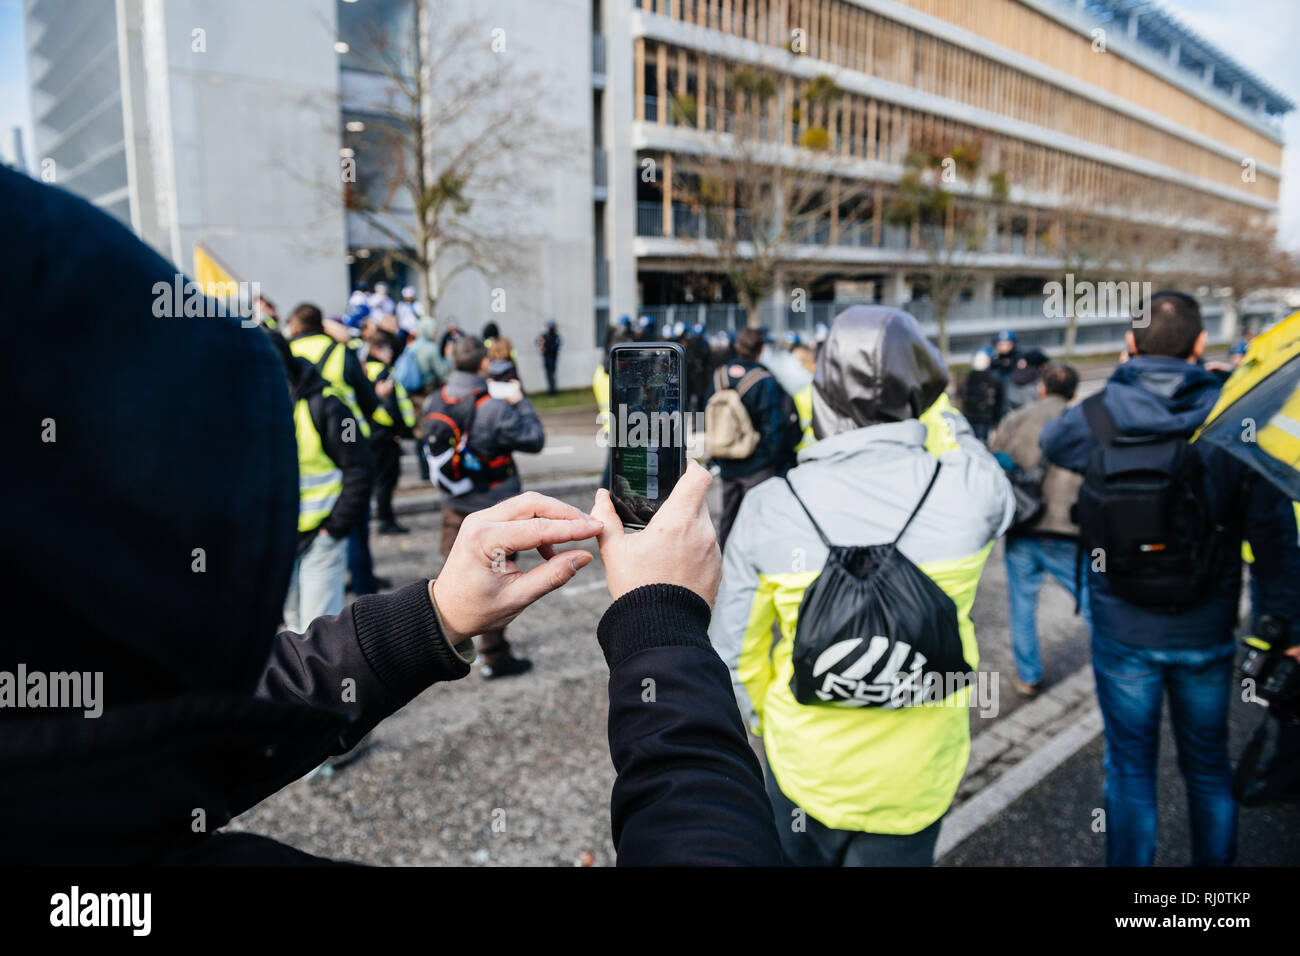 STRASBOURG, FRANCE - DEC 02, 2018 : l'homme avec masque en tenant avec des manifestants et les forces de police au cours de protestation de gilets jaunes Gilet jaune les manifestations anti-gouvernementales Banque D'Images